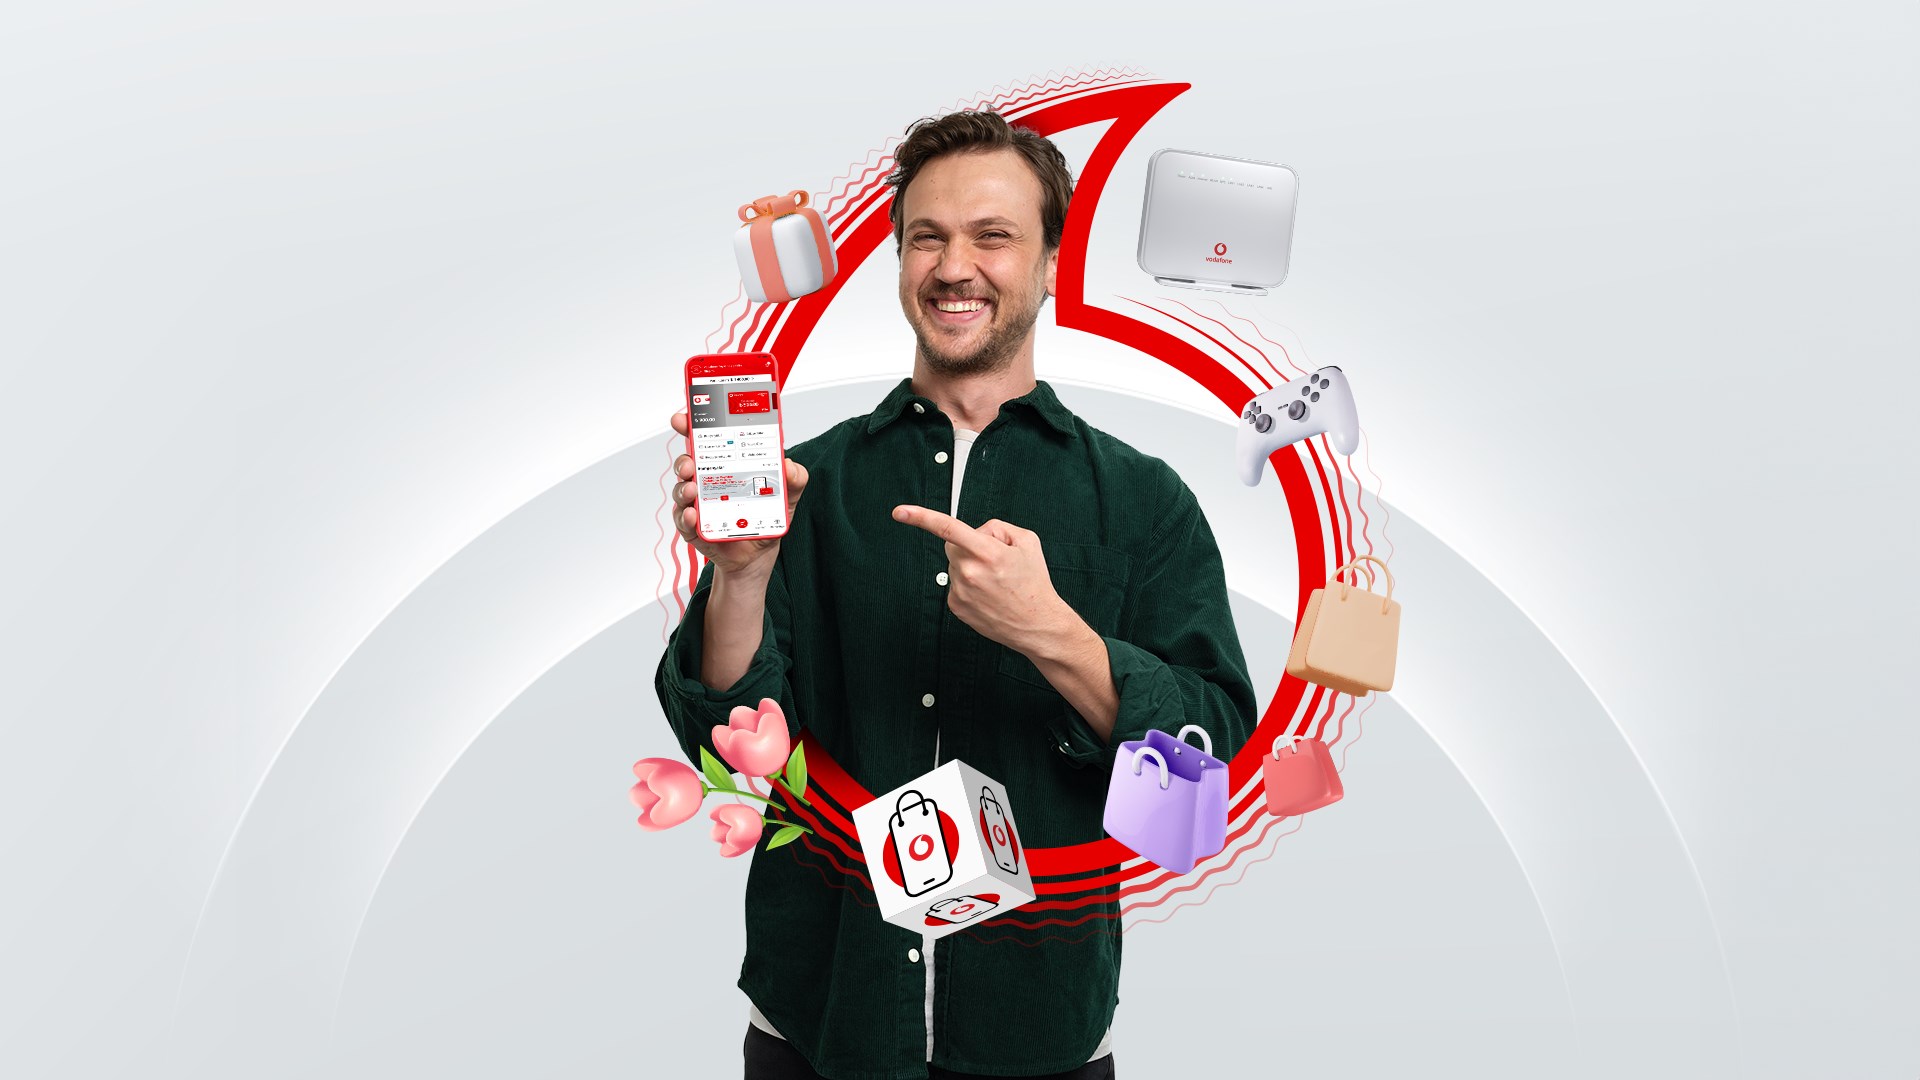 Vodafone Pay'e TR Karekod ile ödeme özelliği geldi